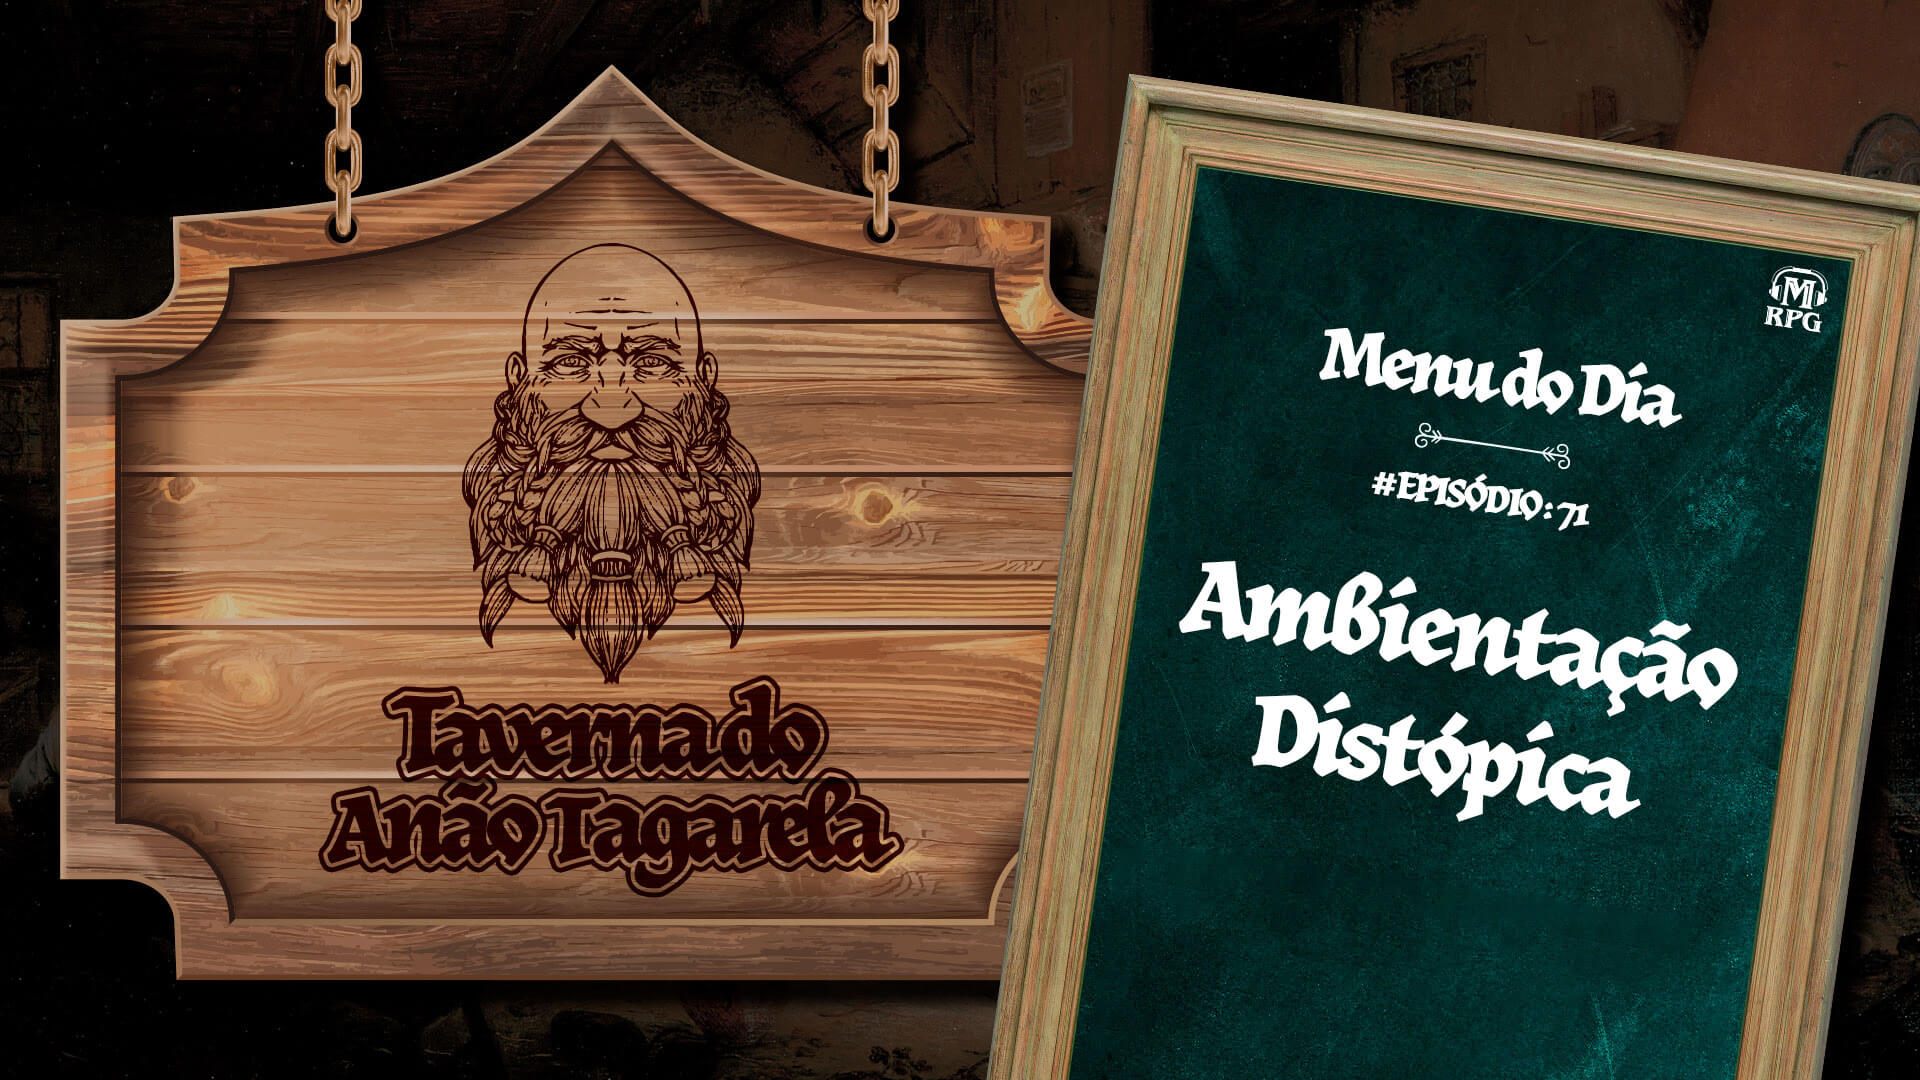 Ambientação Distópica – Taverna do Anão Tagarela #71